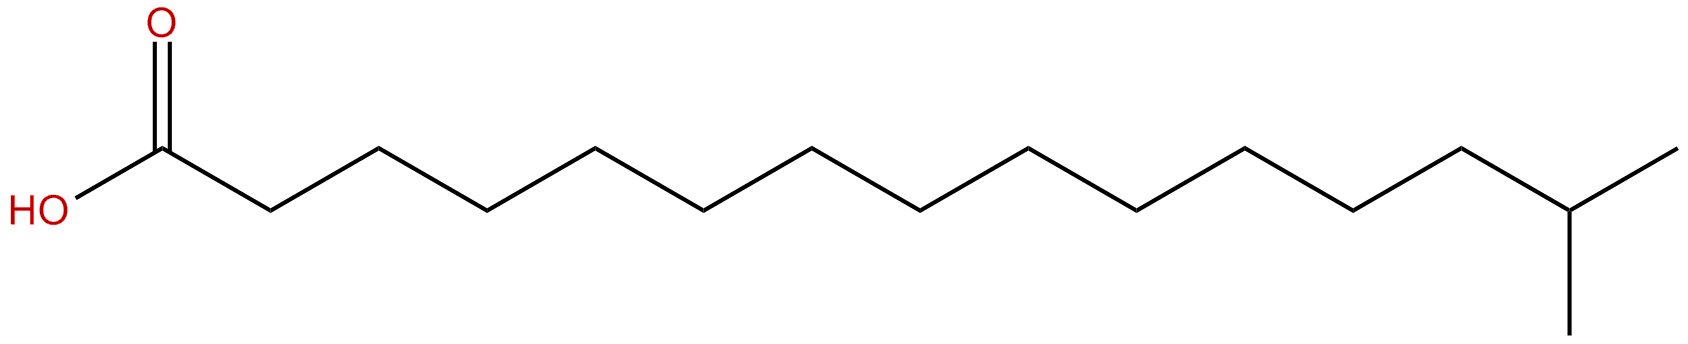 Image of 14-methylpentadecanoic acid